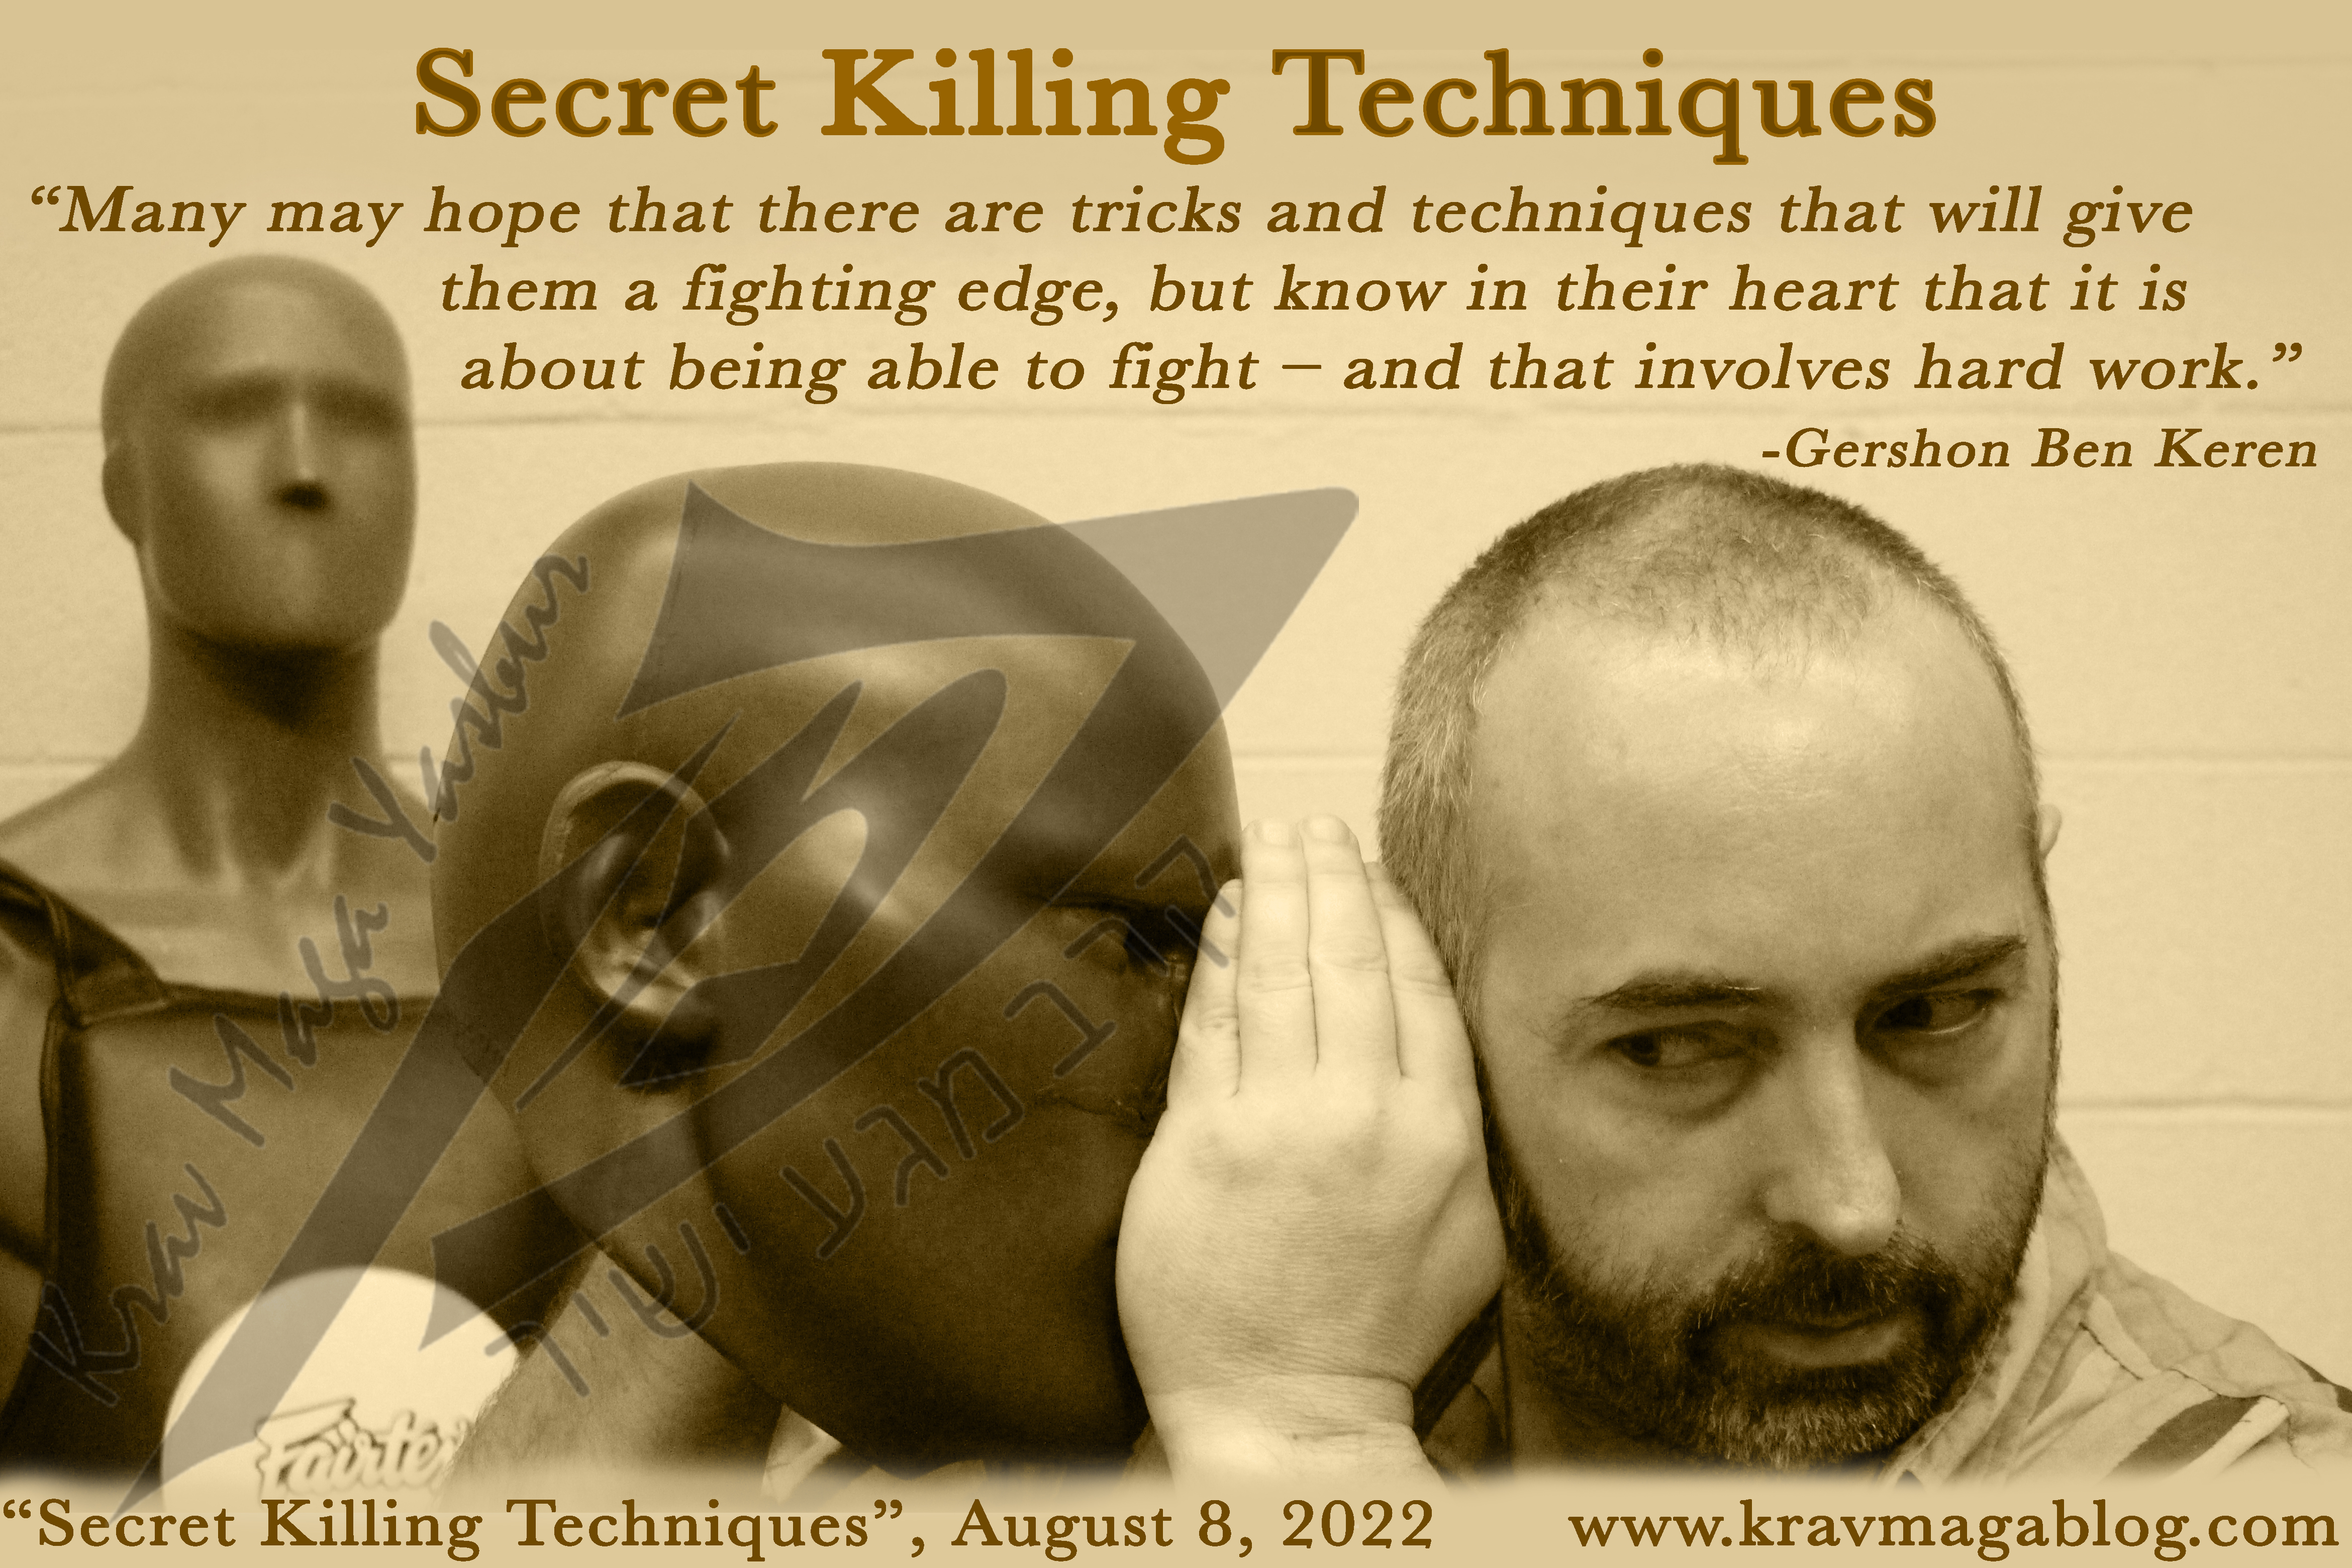 Blog About Secret Killing Techniques